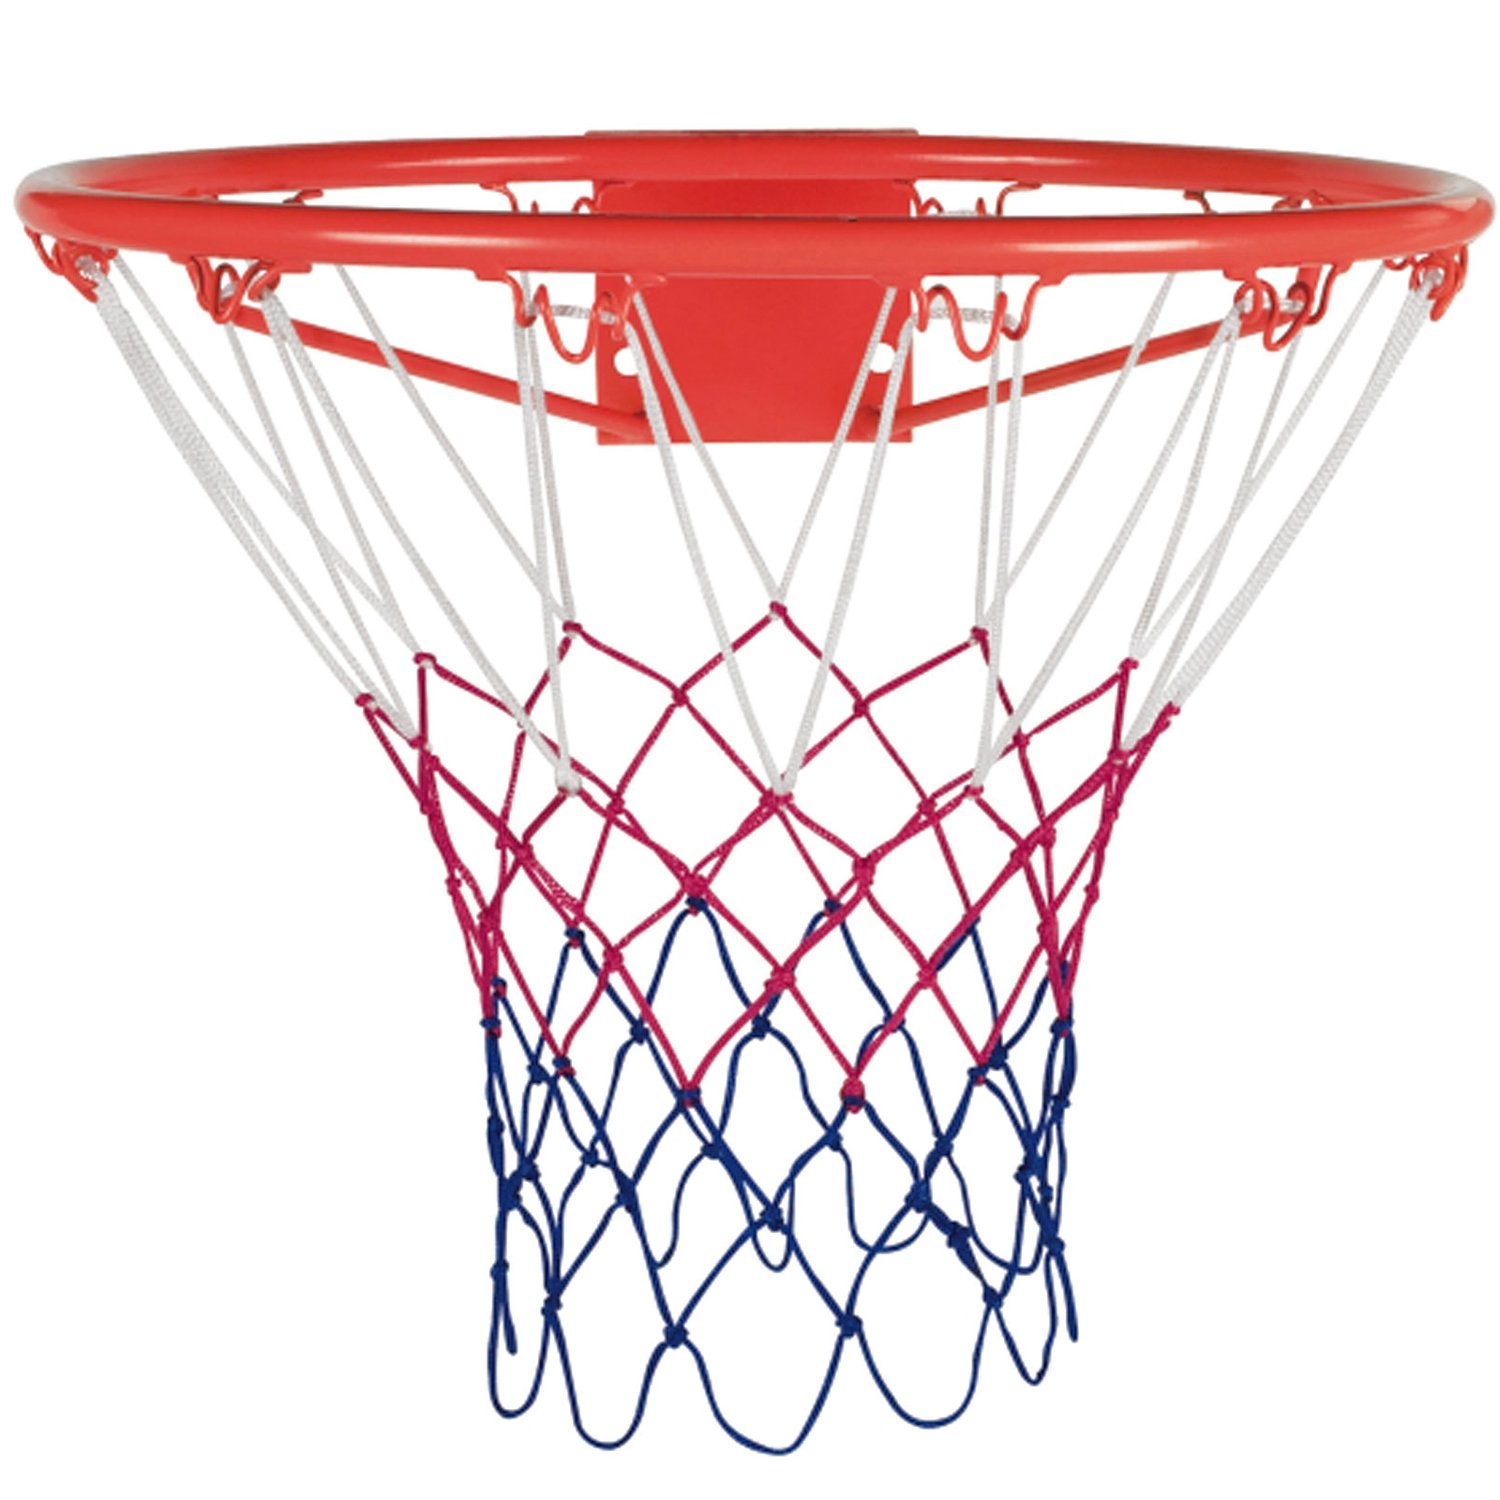 Tunturi 45cm Basketball Hoop with Bracket and Net: Amazon.co.uk 